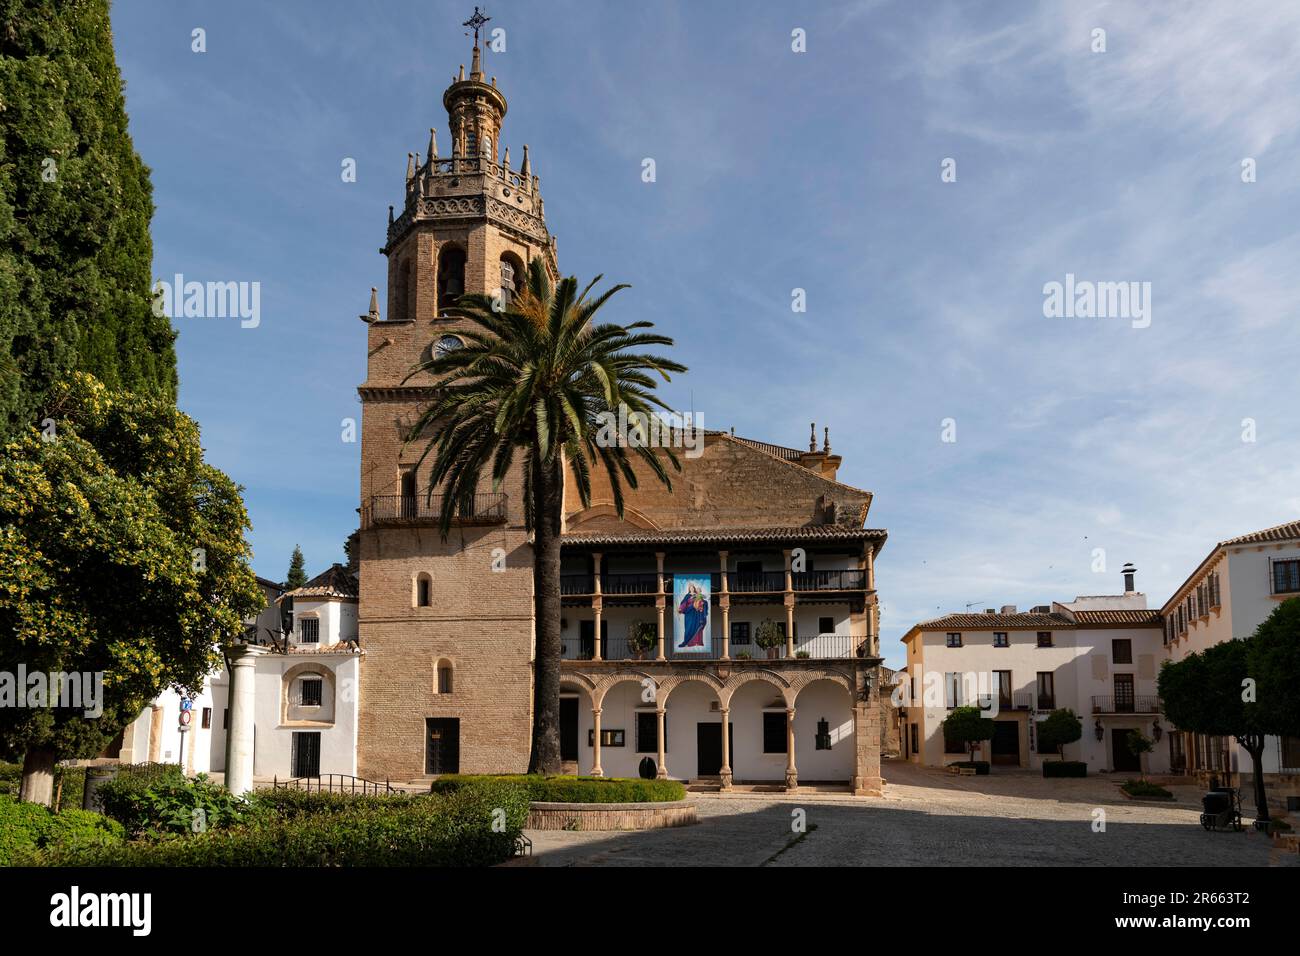 Ciudad de Roda. Bonita y pintoresca ciudad en la provincia de Málaga. Stock Photo